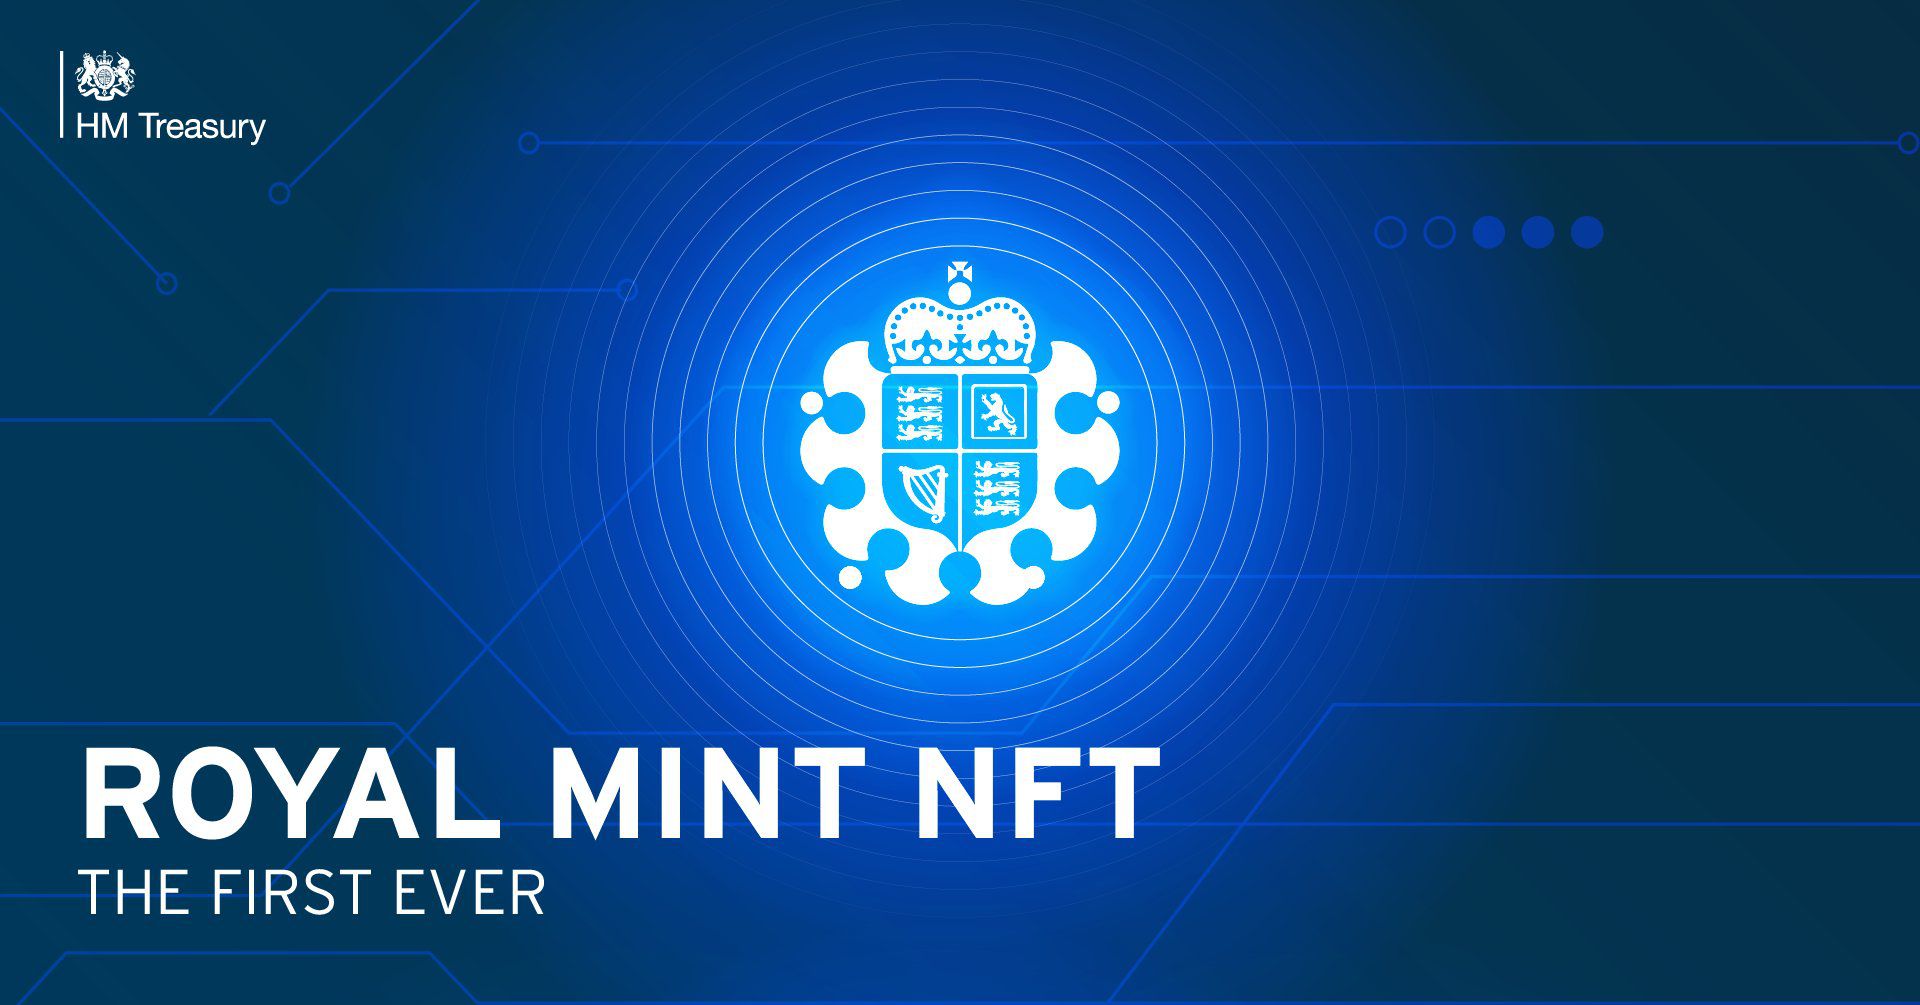 UK Royal Mint will create an NFT